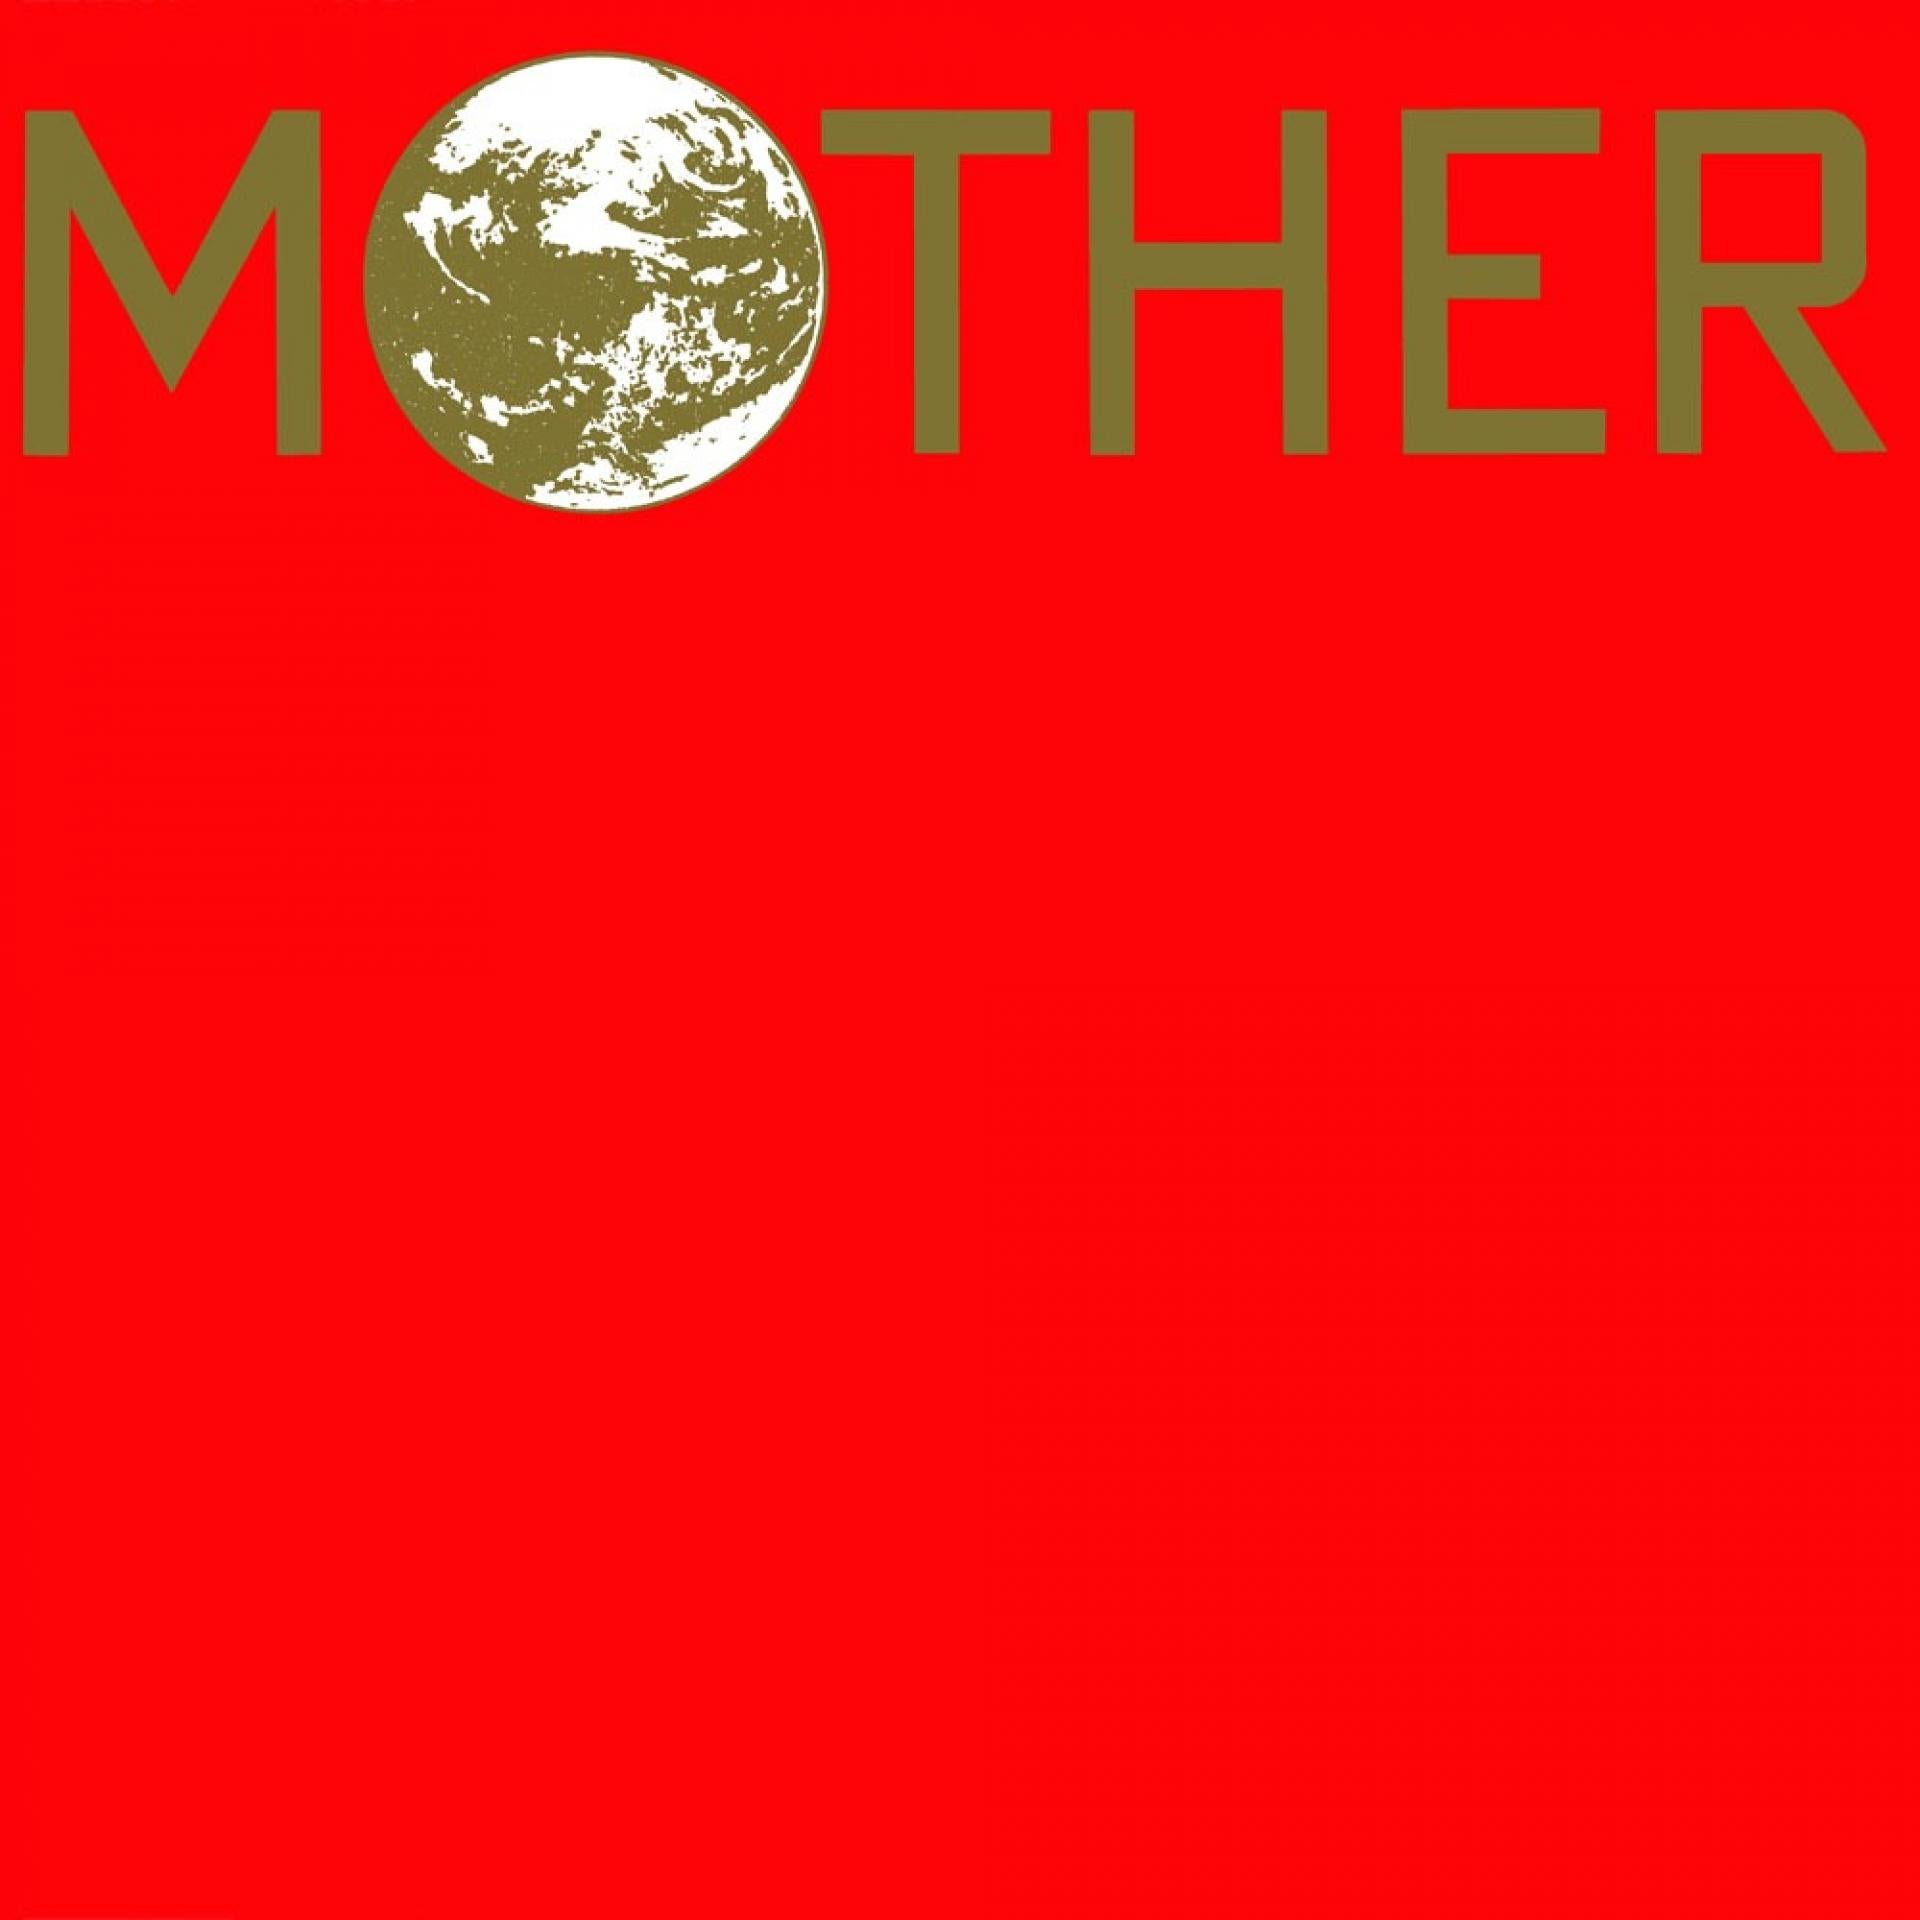 Mother (Vinyl)